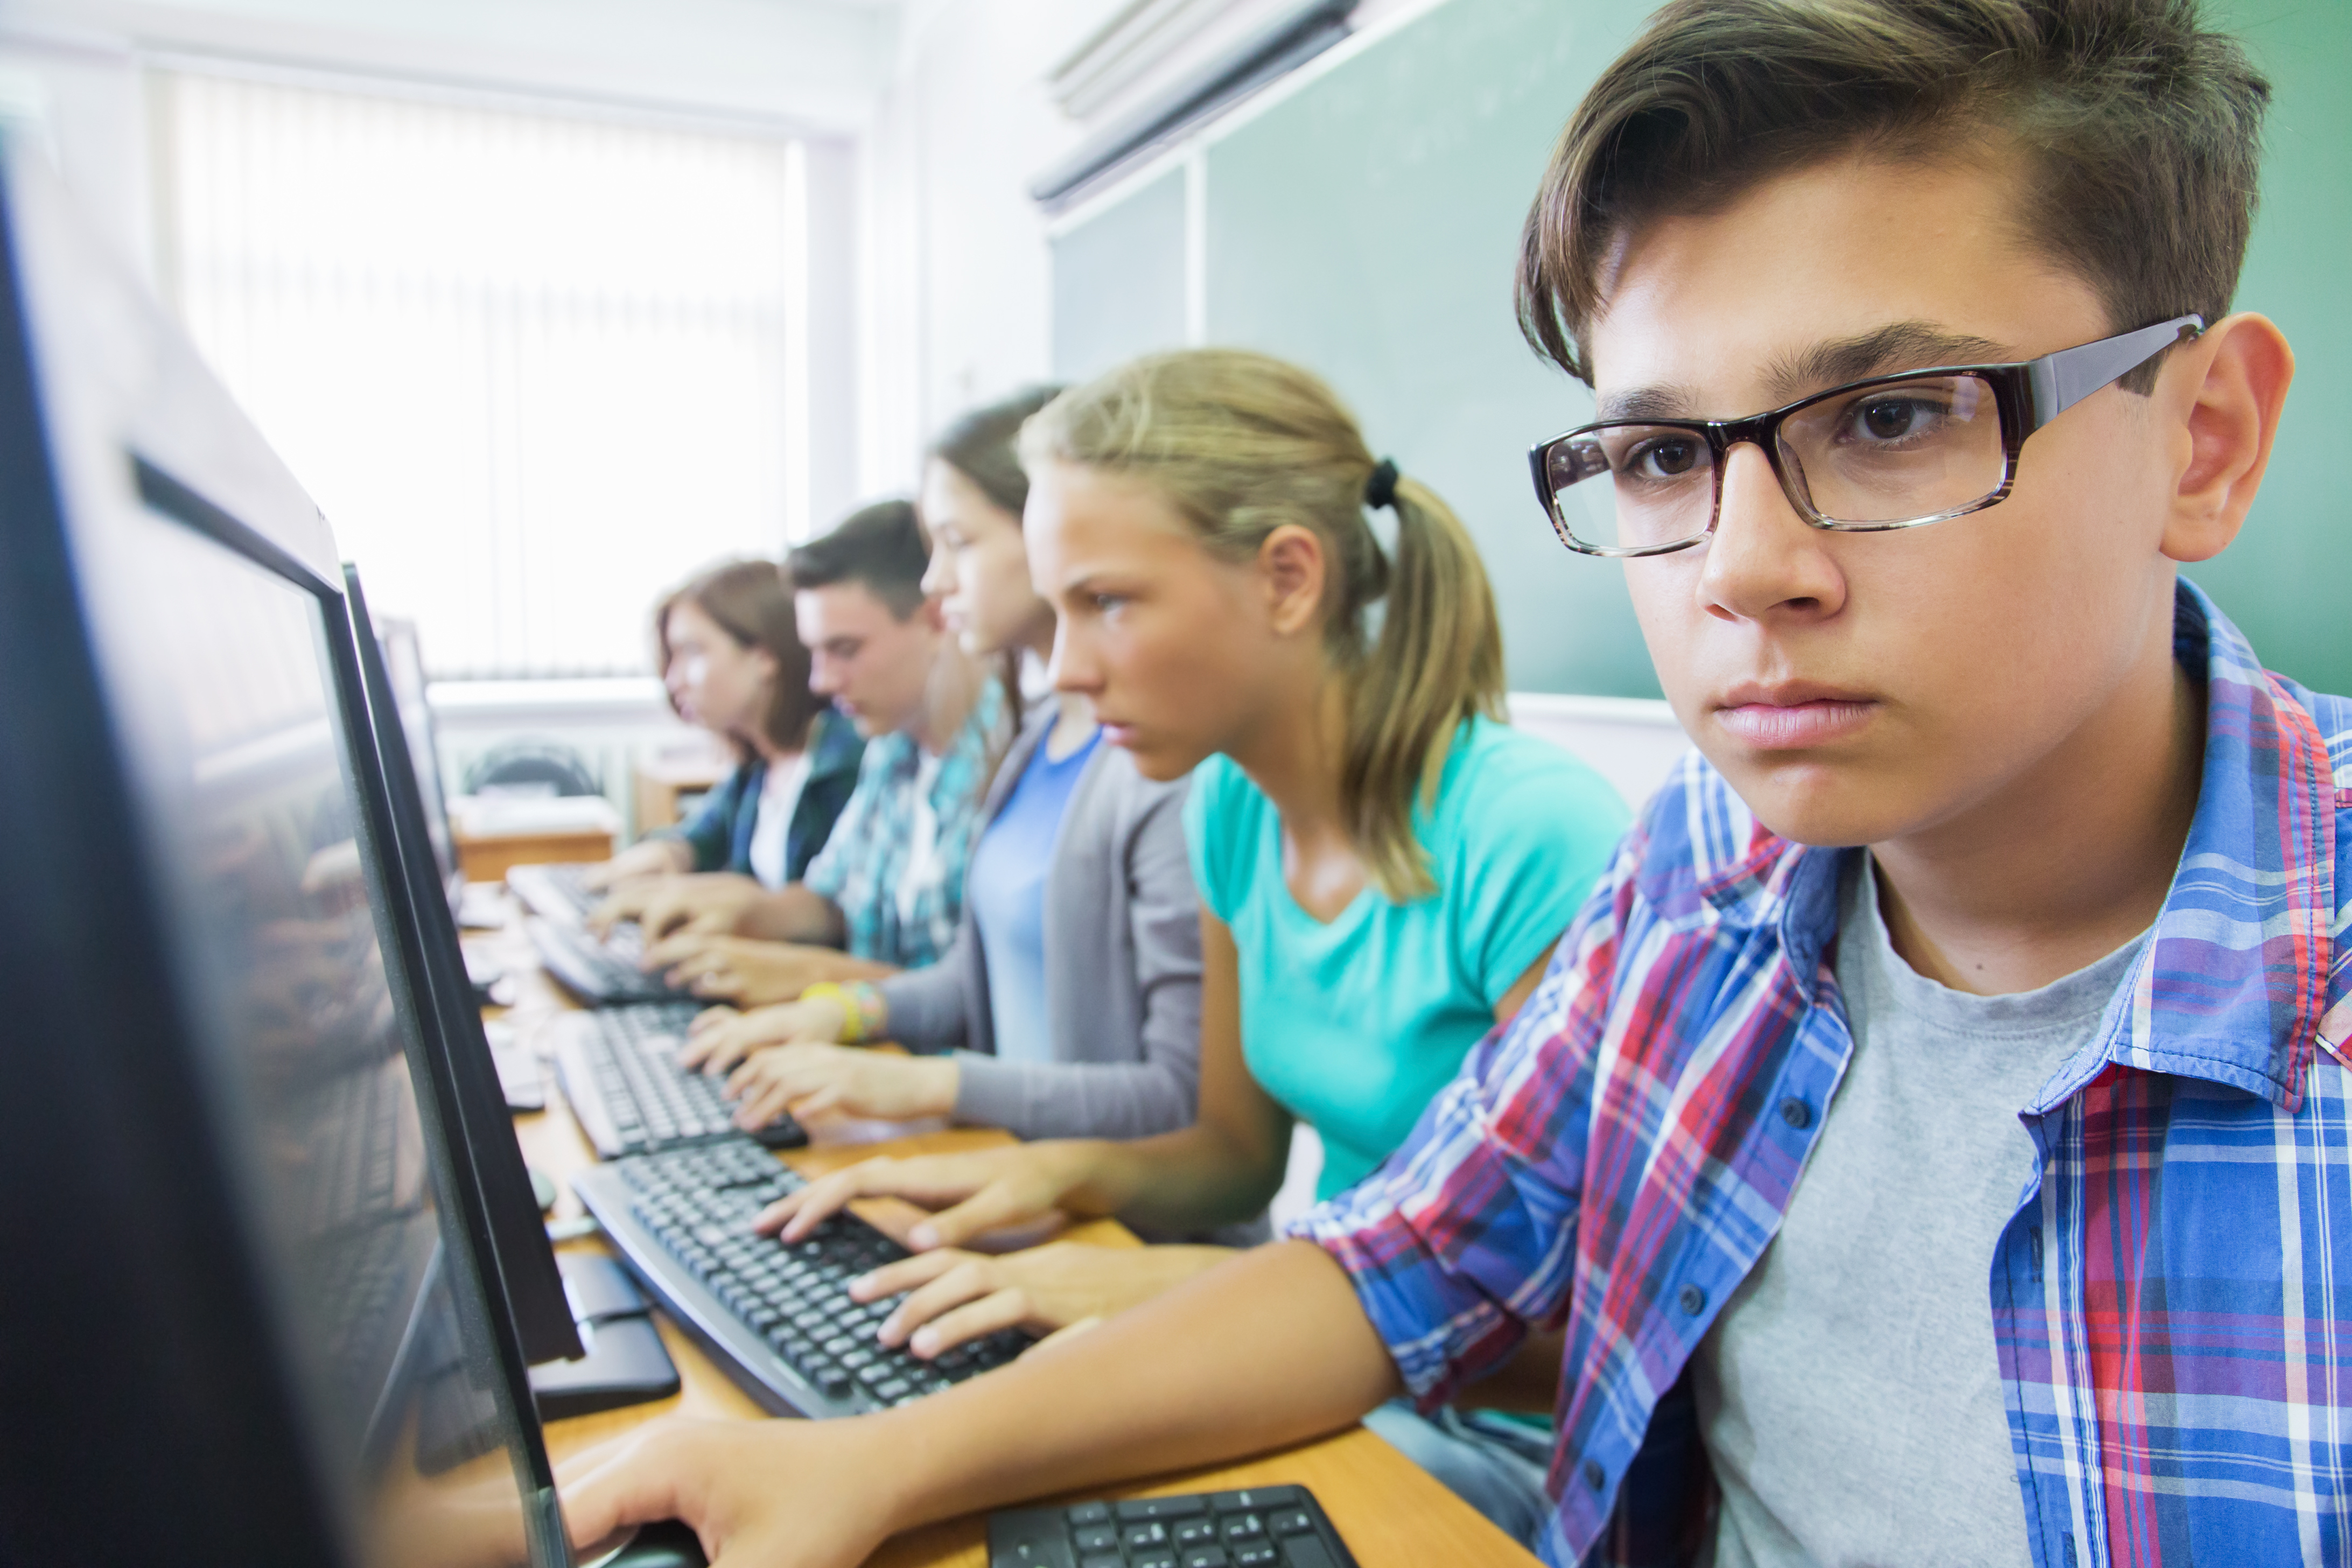 Образовательные программа подросток подростку. Школьники it. Ученик подросток. Компьютер в школе. Ученик за компьютером.